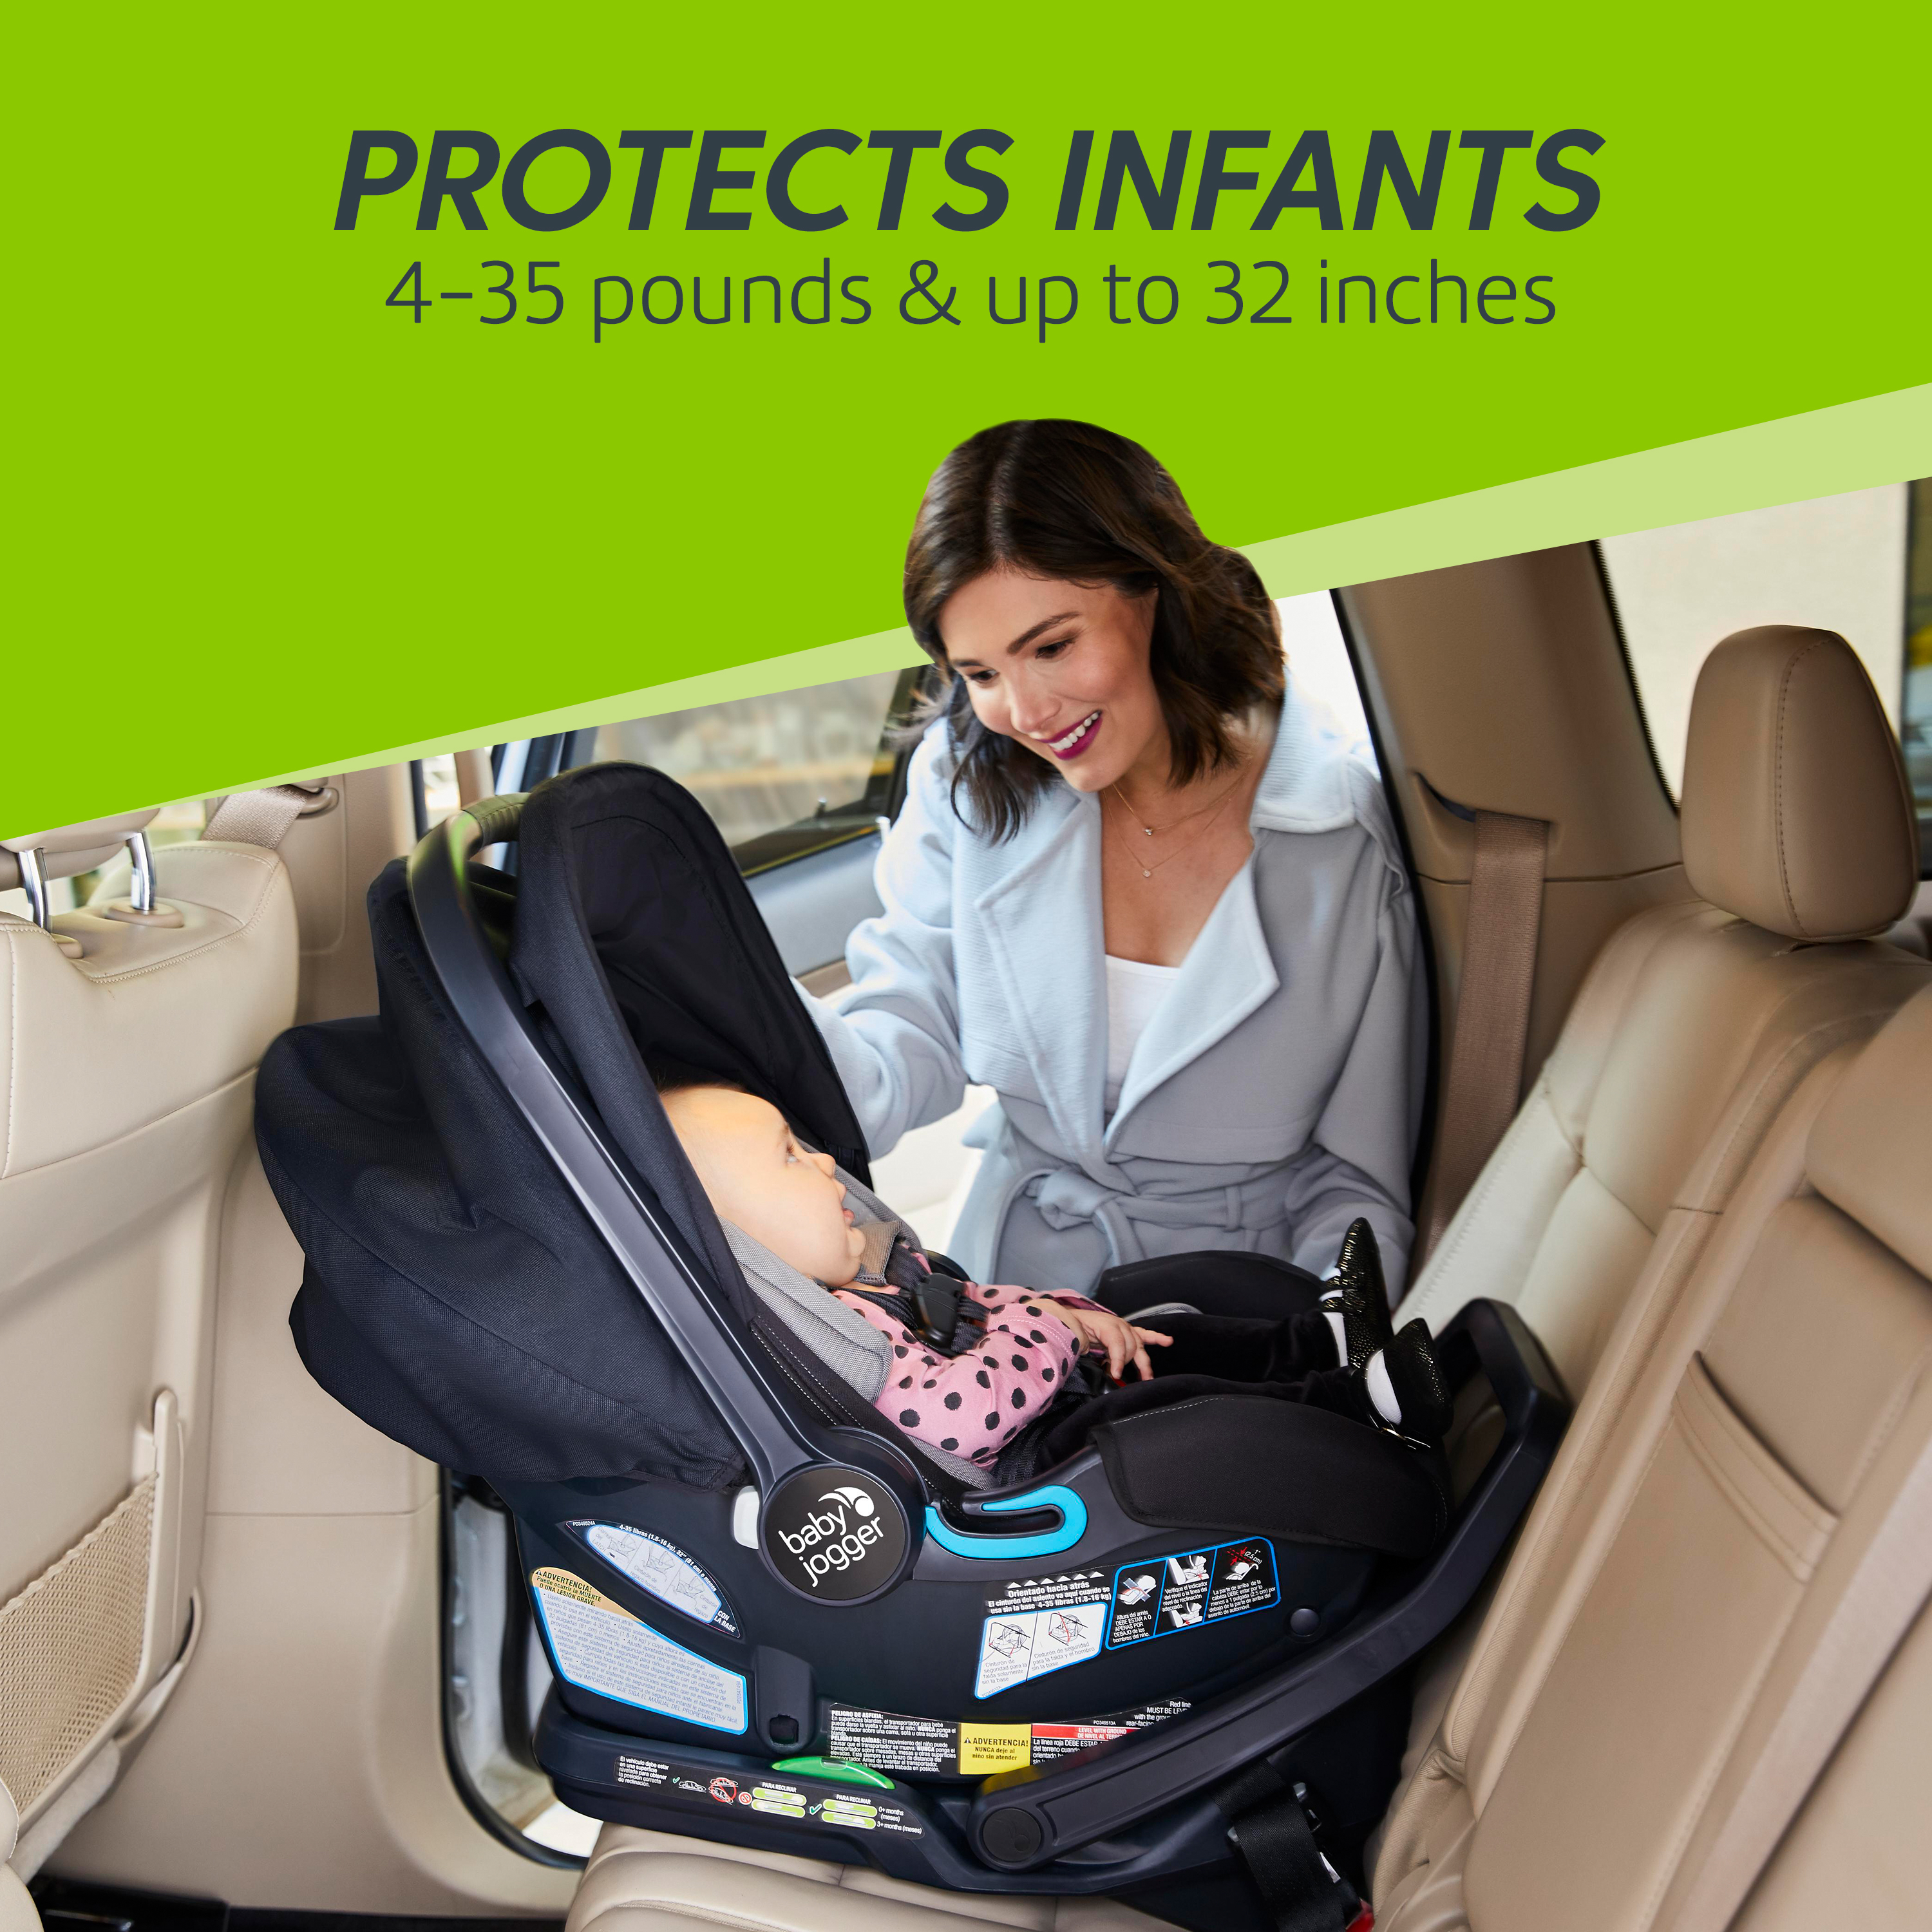 city go infant car seat review